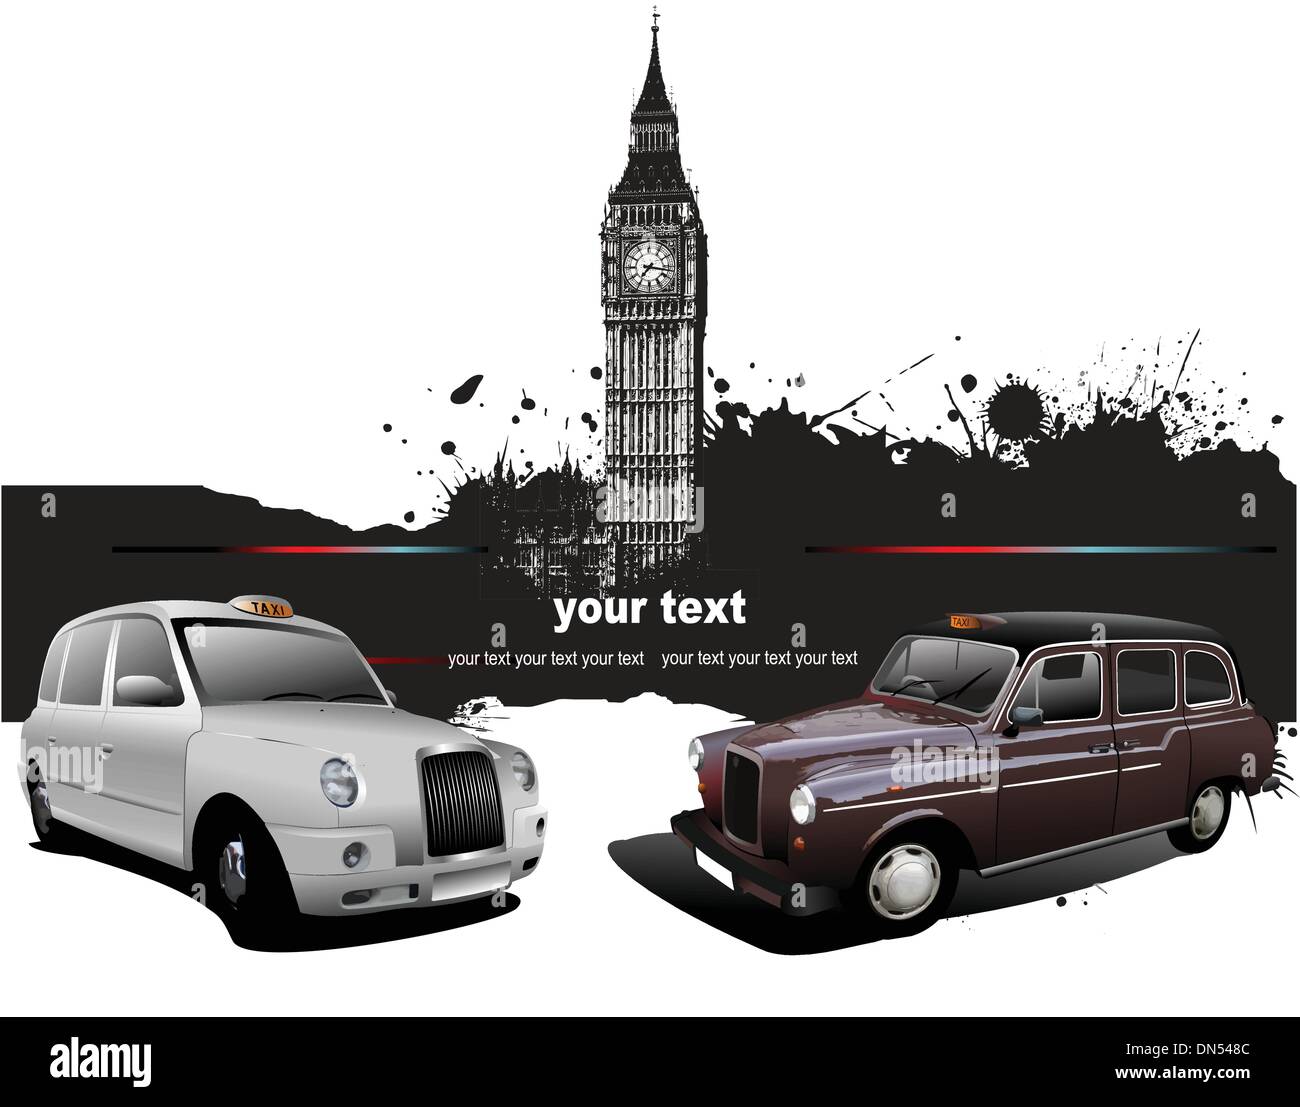 Sfondo di Londra con il Big Ben e due taxicabs. Illustra il vettore Illustrazione Vettoriale